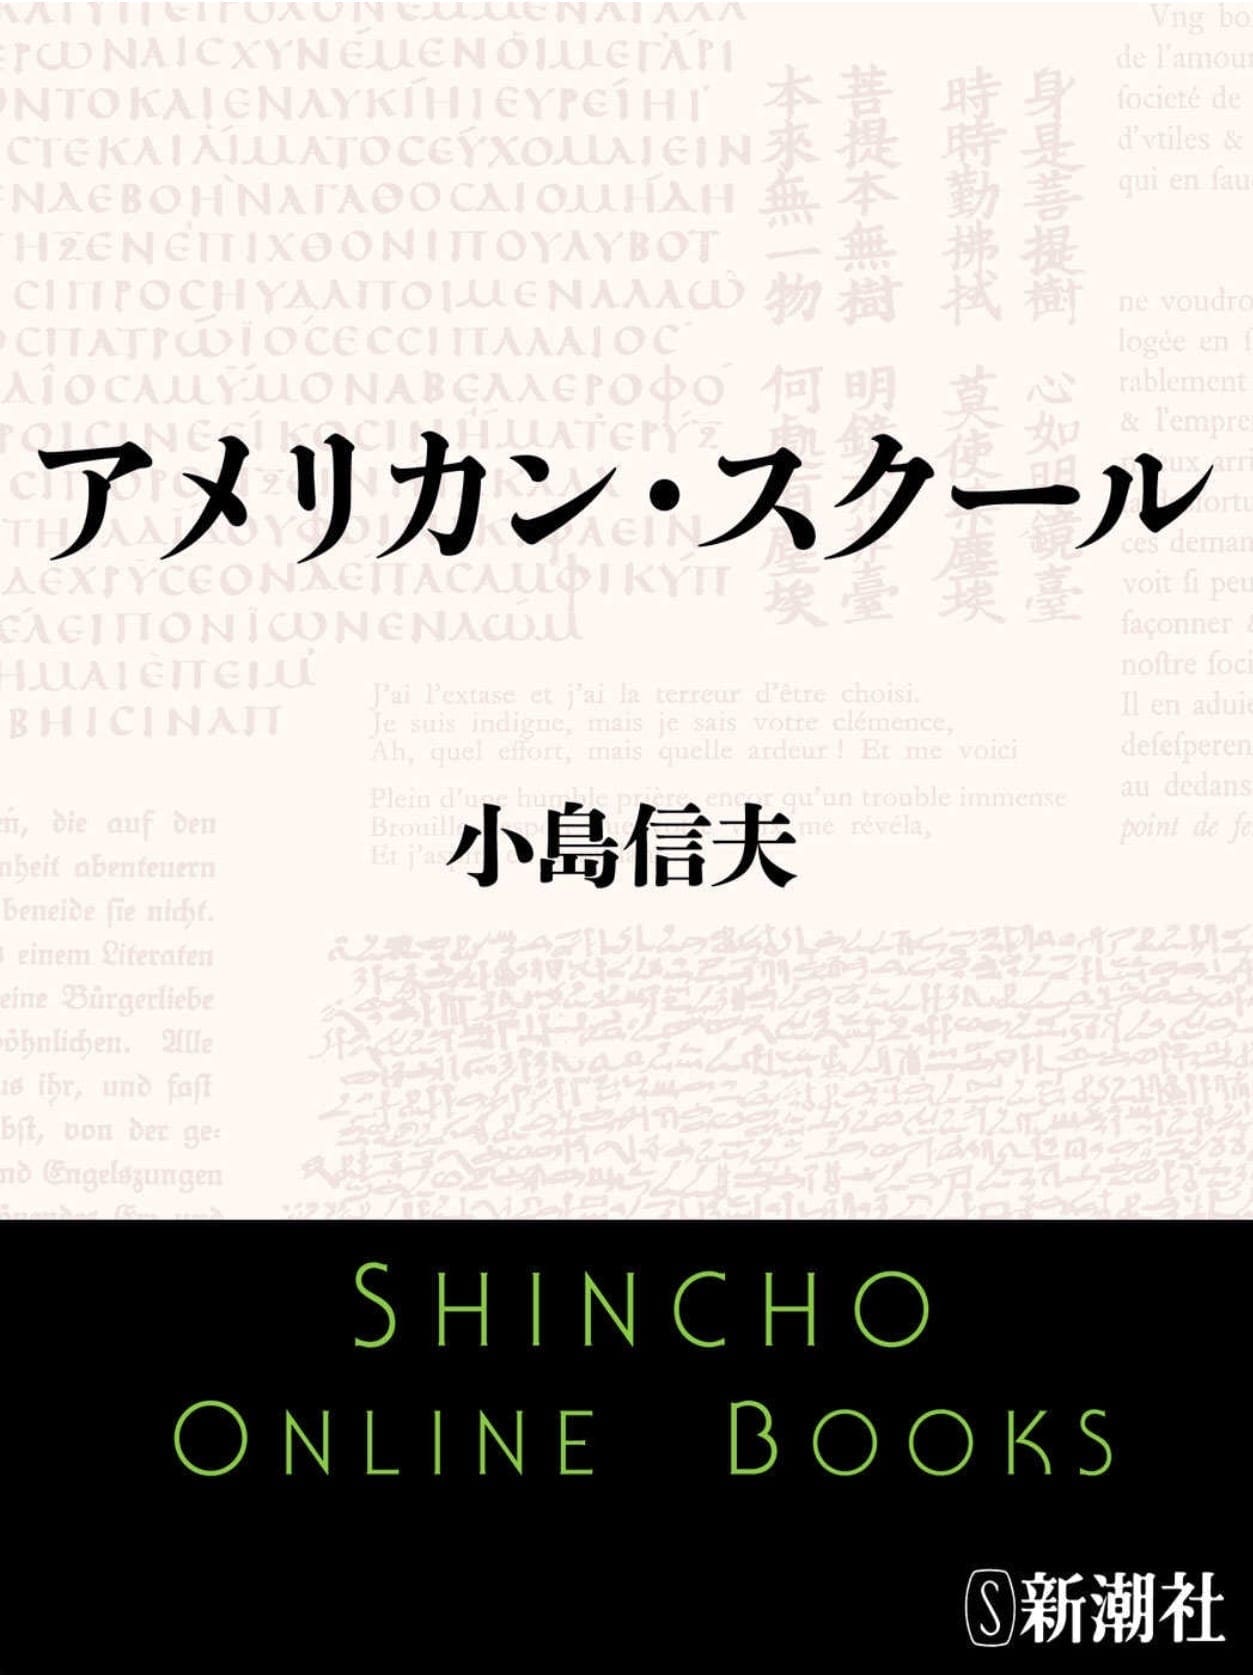 小島信夫「アメリカン・スクール」について | Japanese Books and 